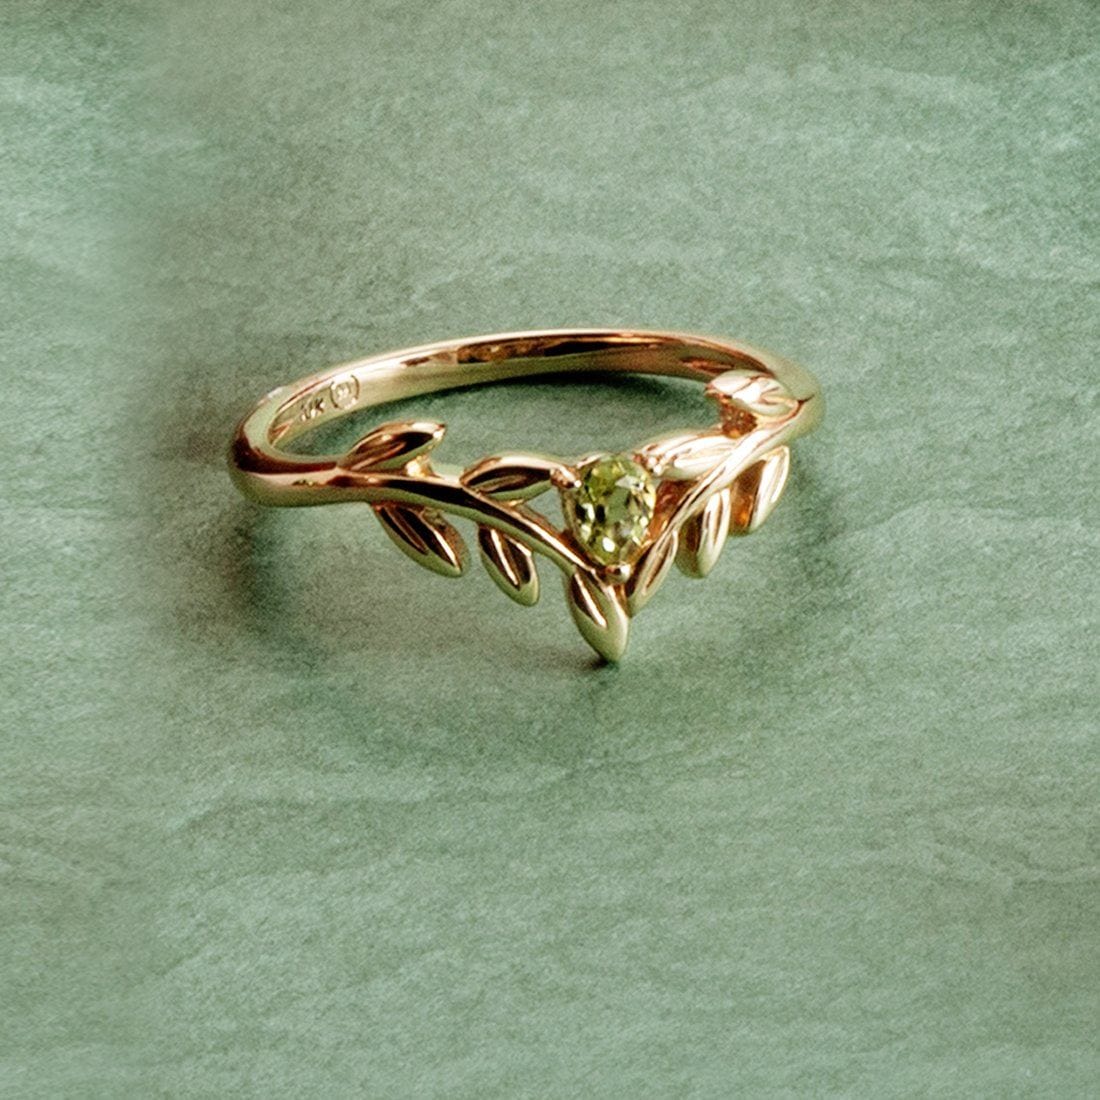 135R1914019 O Leaf Peridot Wishbone Ring in 9ct Yellow Gold 2